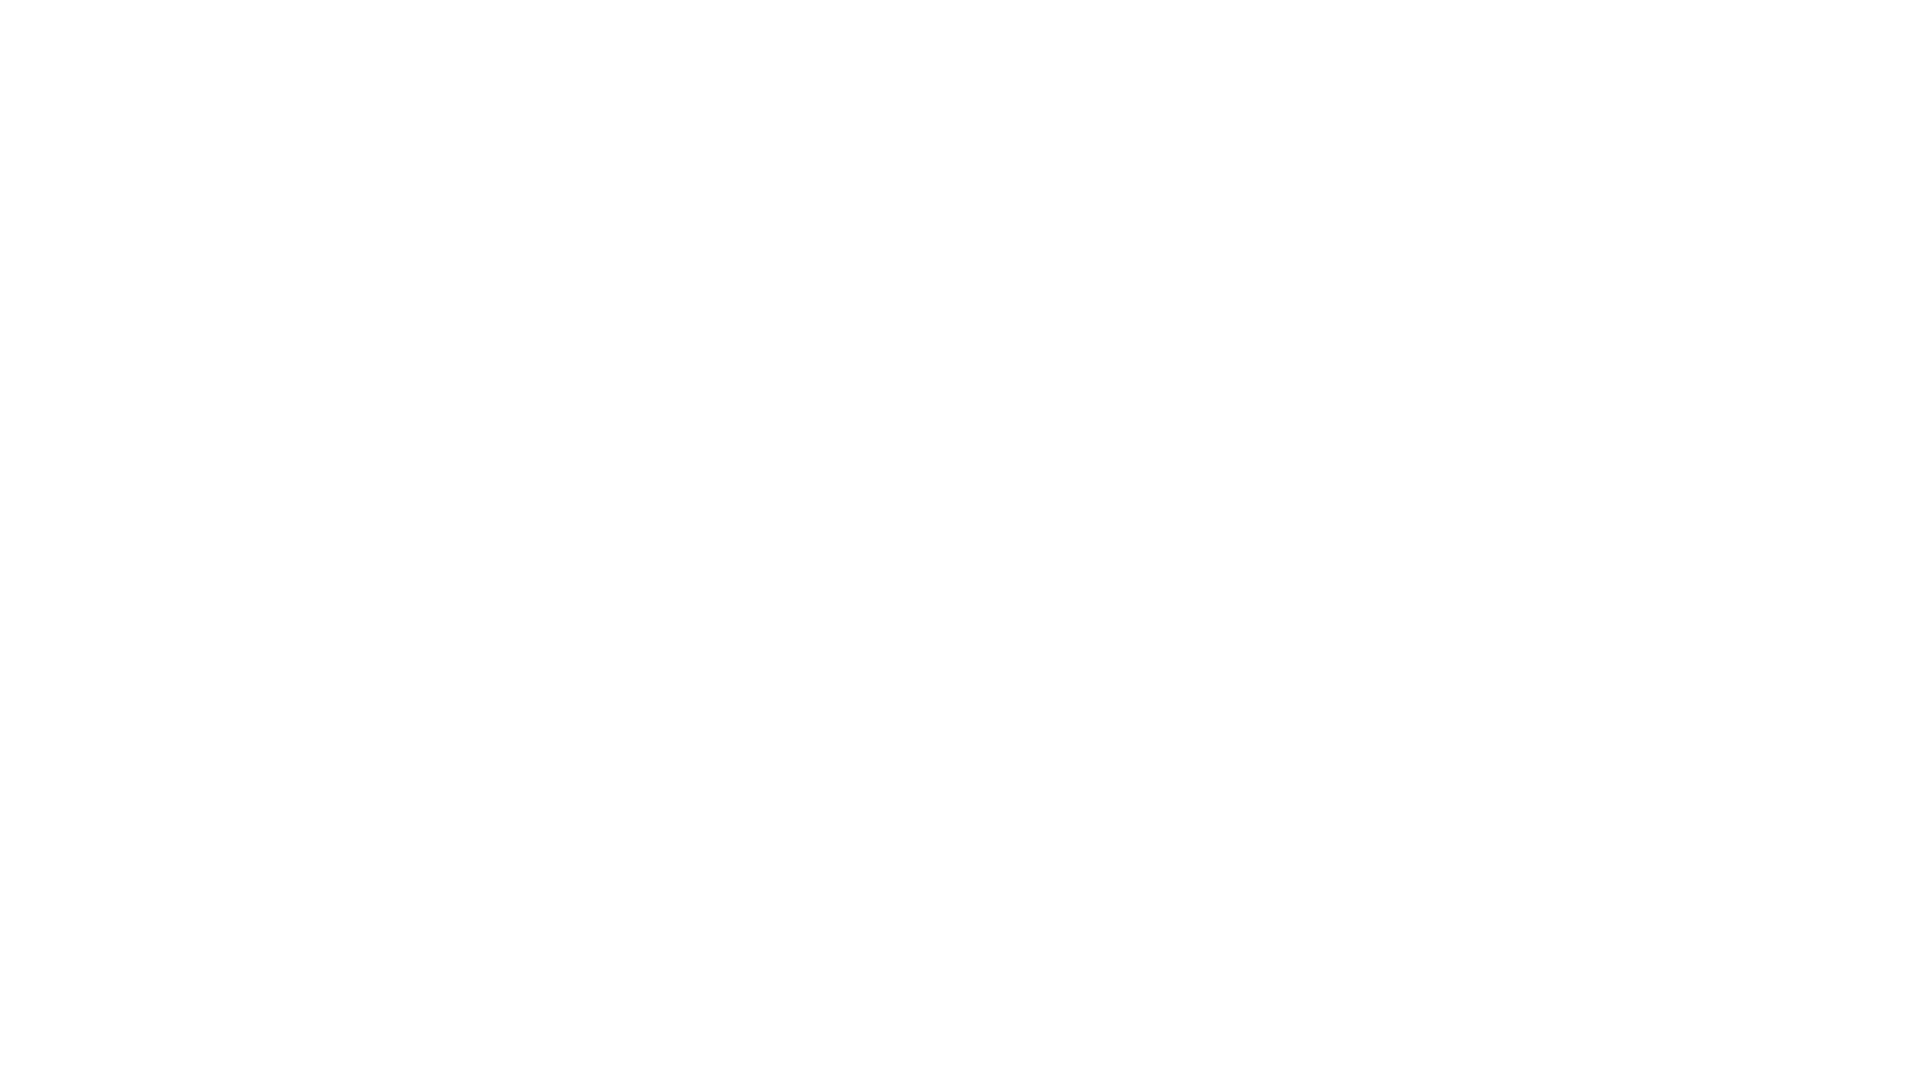 2move.design logo